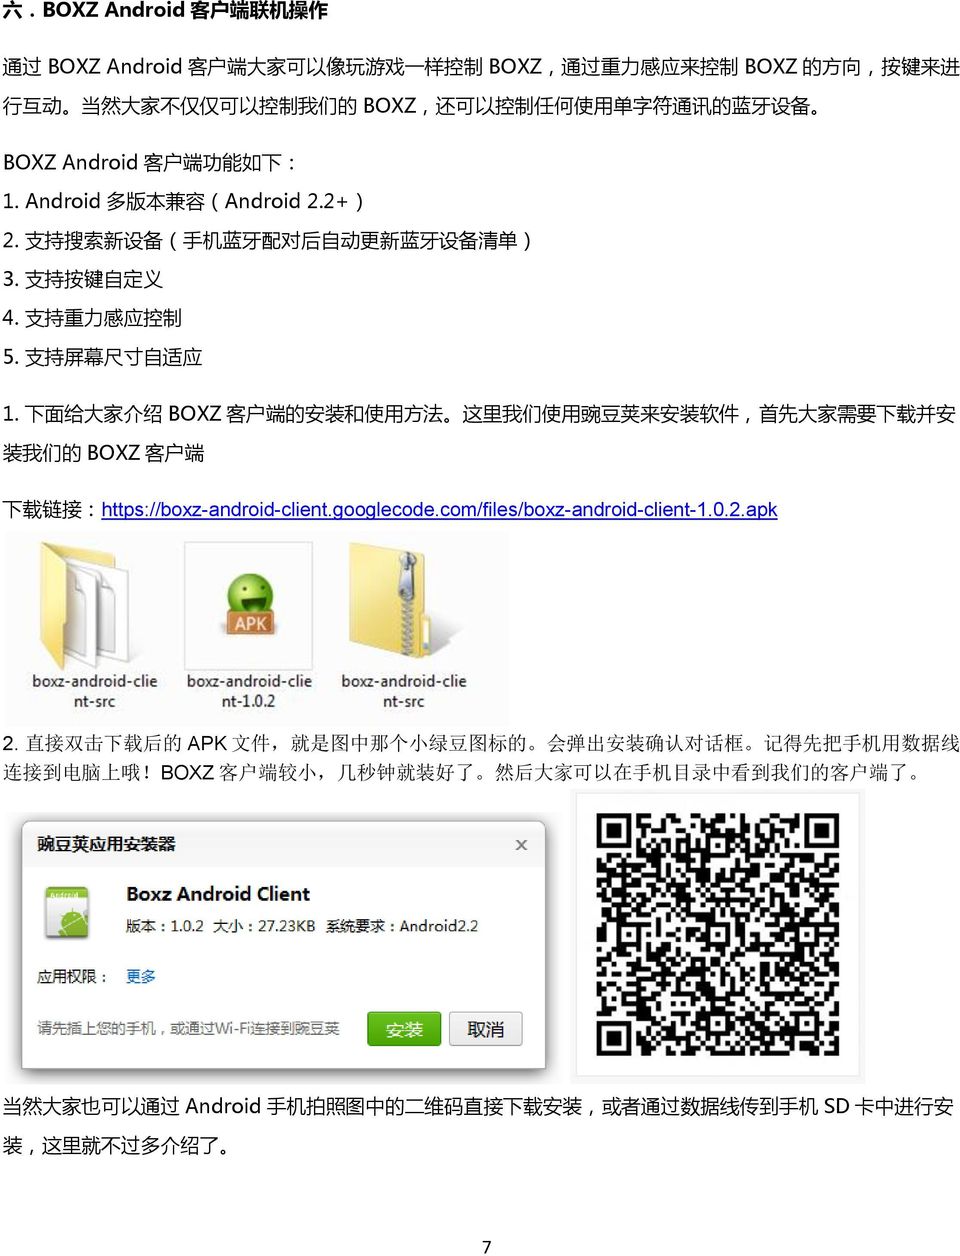 下 面 给 大 家 介 绍 BOXZ 客 户 端 的 安 装 和 使 用 方 法 这 里 我 们 使 用 豌 豆 荚 来 安 装 软 件, 首 先 大 家 需 要 下 载 并 安 装 我 们 的 BOXZ 客 户 端 下 载 链 接 :https://boxz-android-client.googlecode.com/files/boxz-android-client-1.0.2.apk 2.